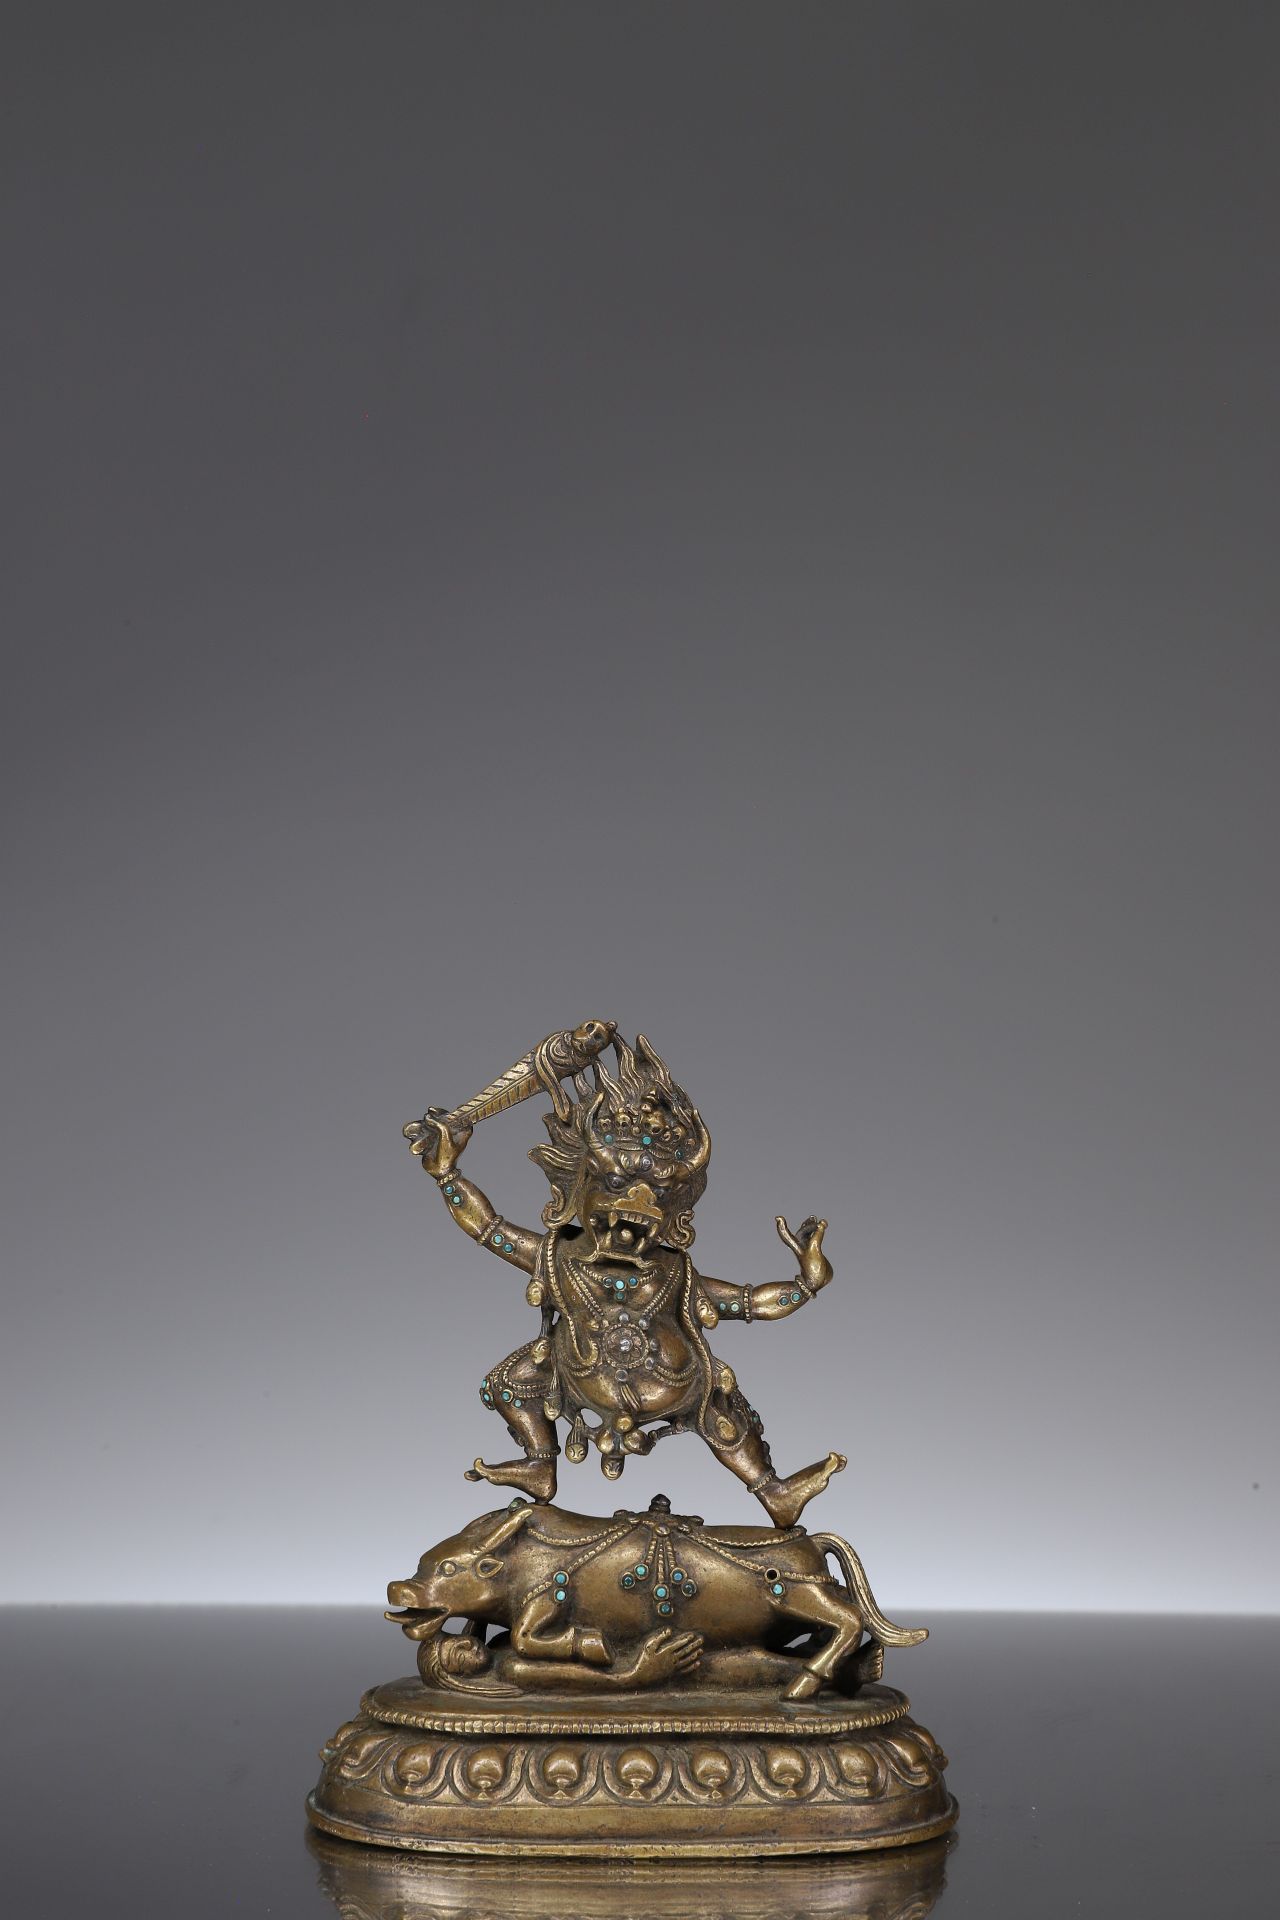 YAMANTAKA 鎏金铜托，镶嵌银饰


西藏，16至17世纪





重量：442克





尺寸。11 x 9 x 5厘米





死神的毁灭者宽腿&hellip;